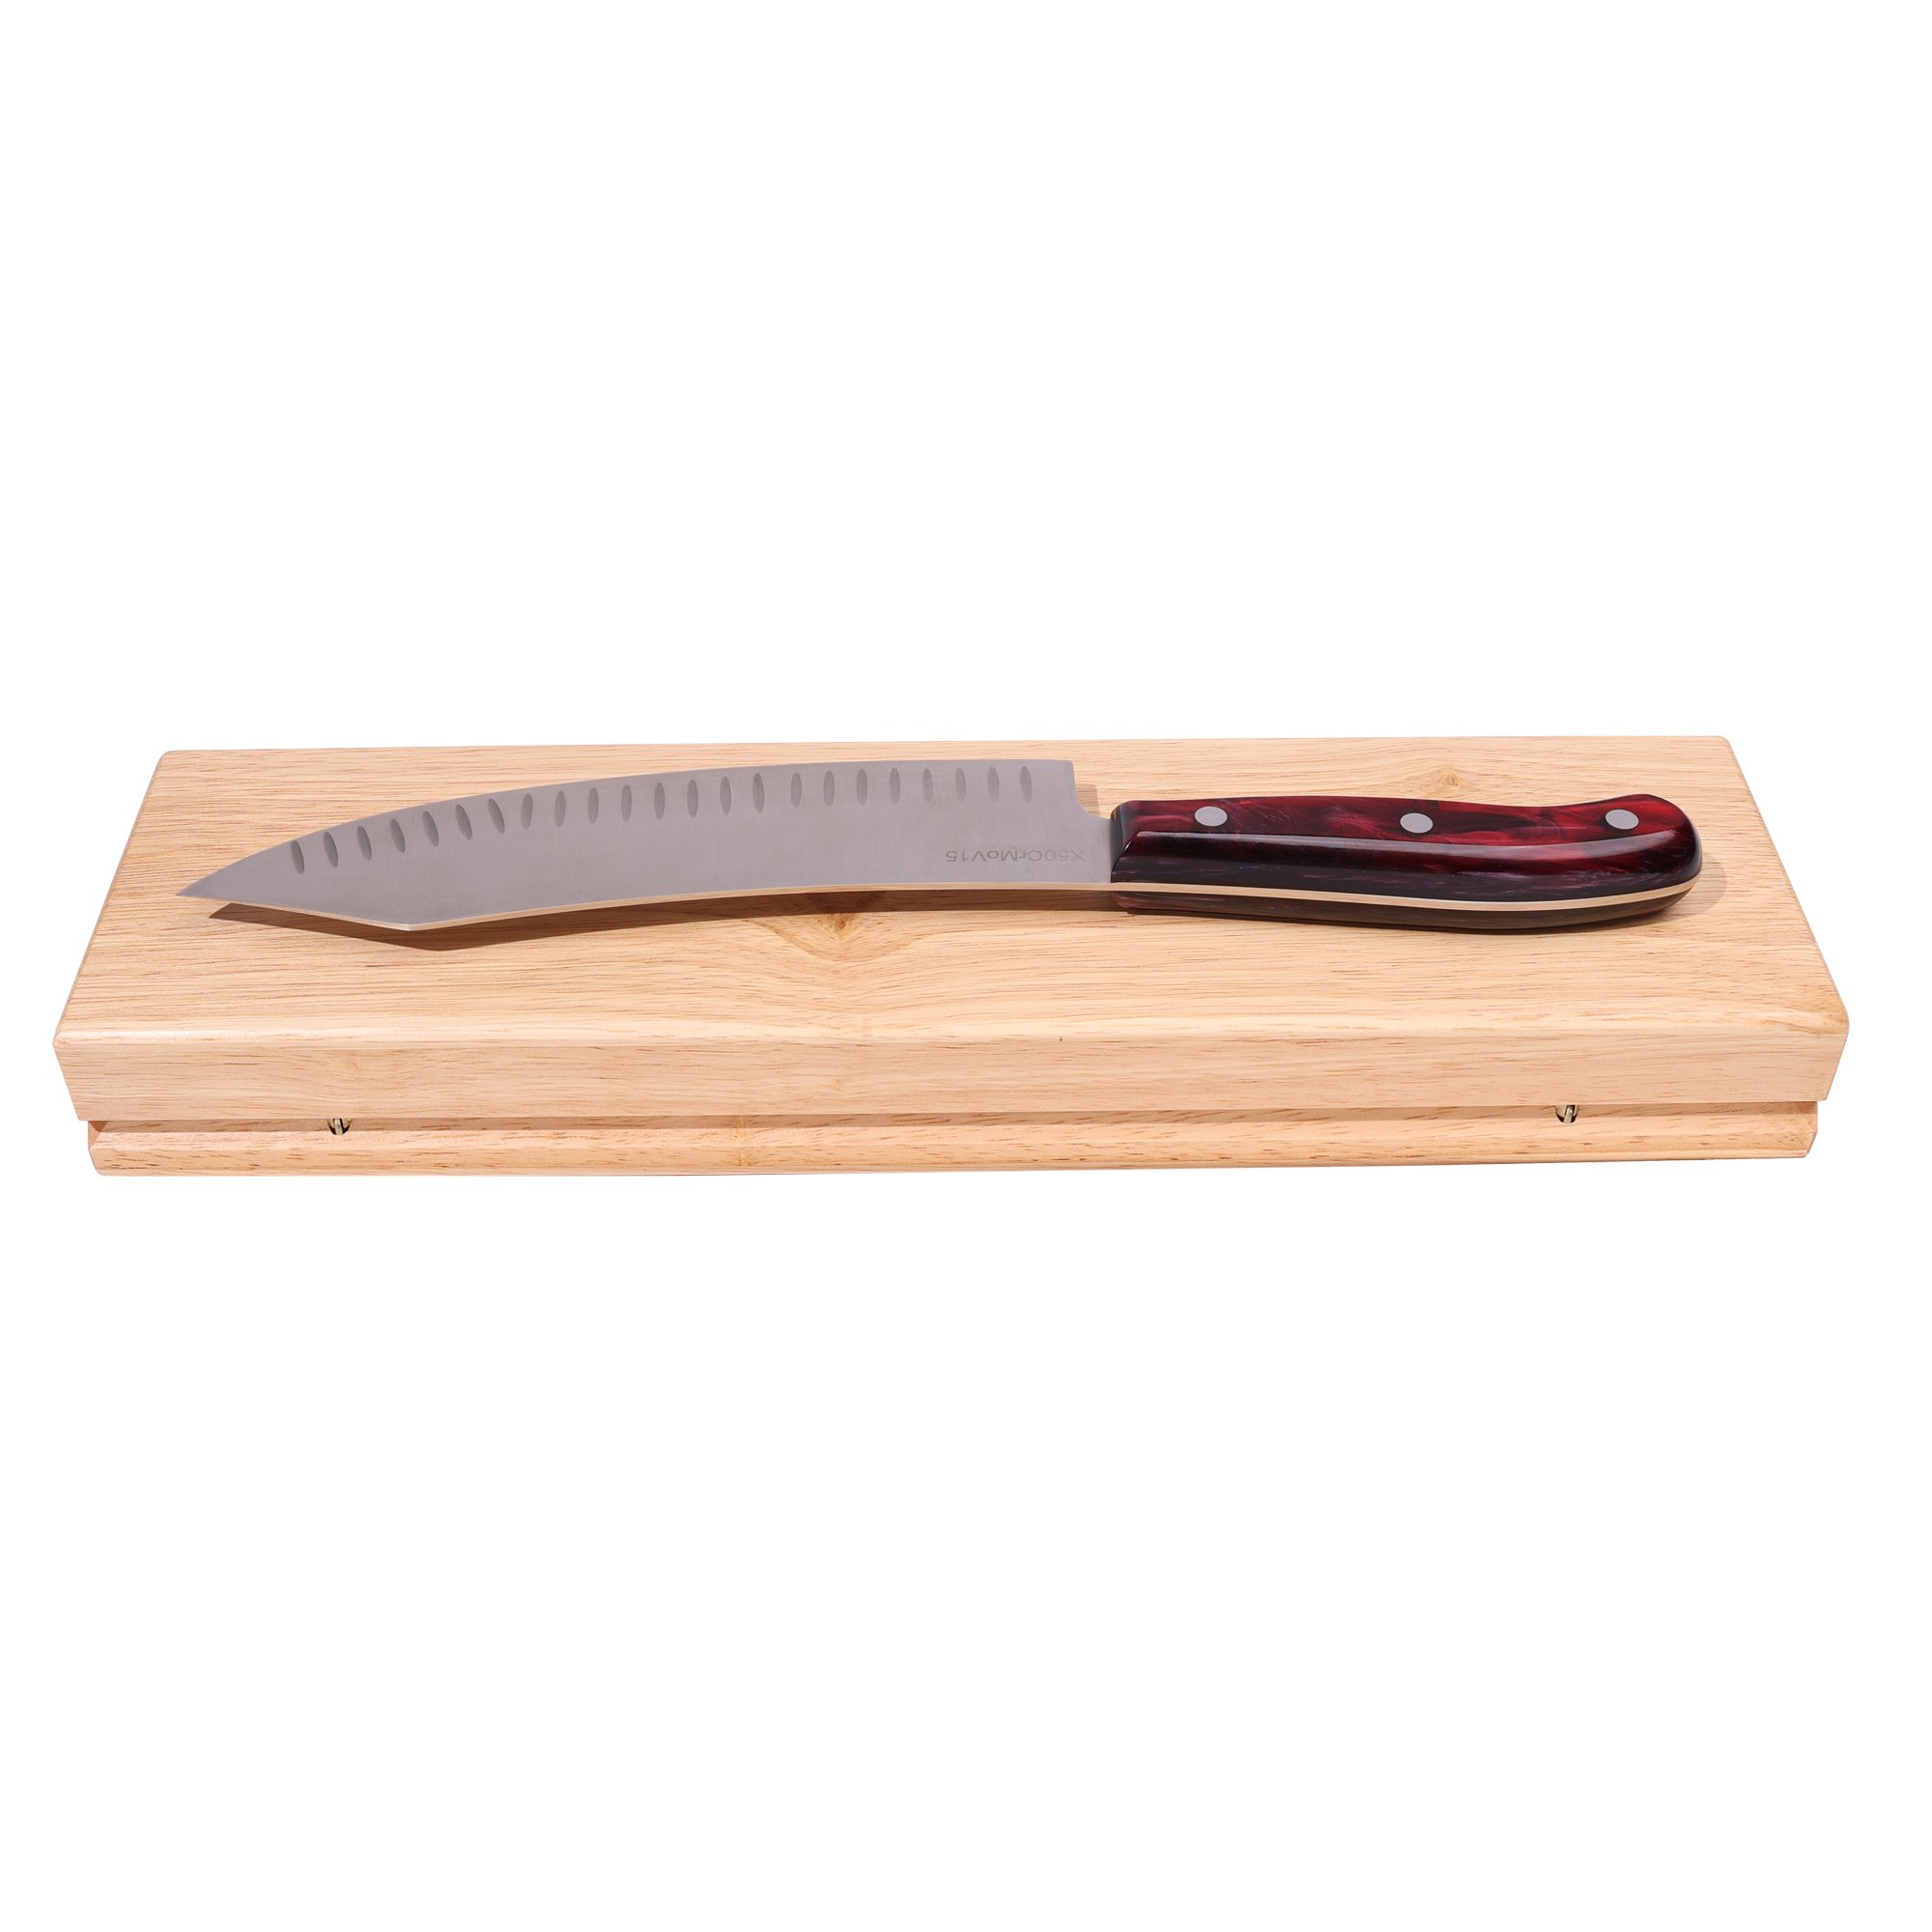 STONELINE® Couteau de chef en acier inoxydable 33,2 cm, avec coffret de rangement en bois